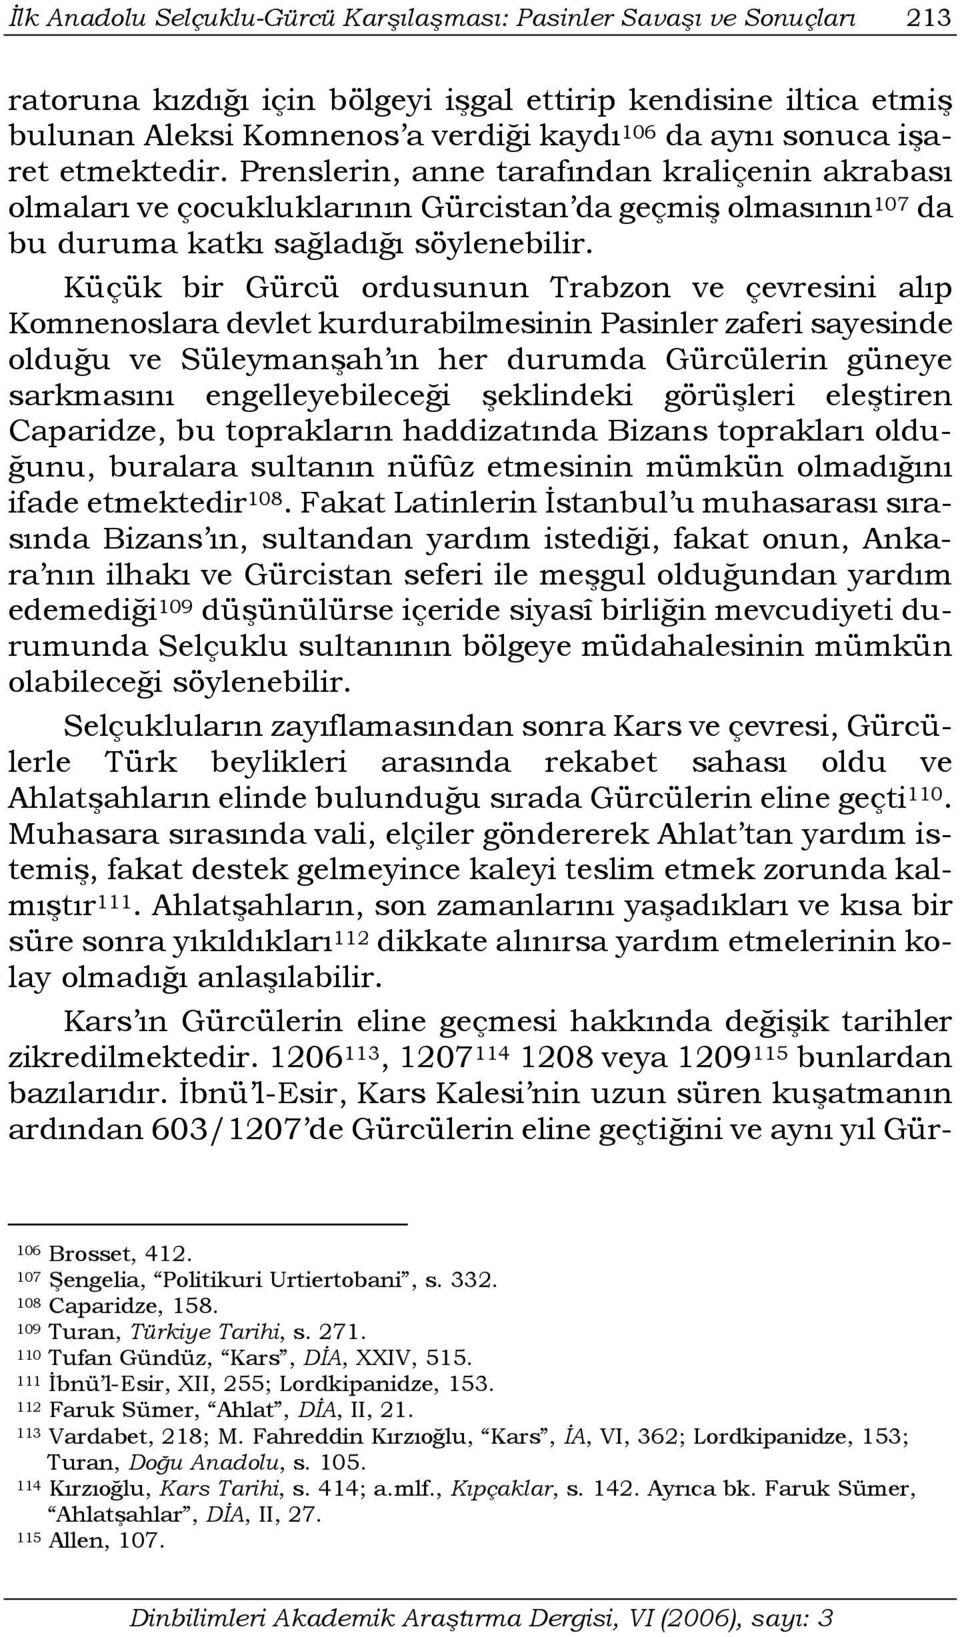 Küçük bir Gürcü ordusunun Trabzon ve çevresini alıp Komnenoslara devlet kurdurabilmesinin Pasinler zaferi sayesinde olduğu ve Süleymanşah ın her durumda Gürcülerin güneye sarkmasını engelleyebileceği